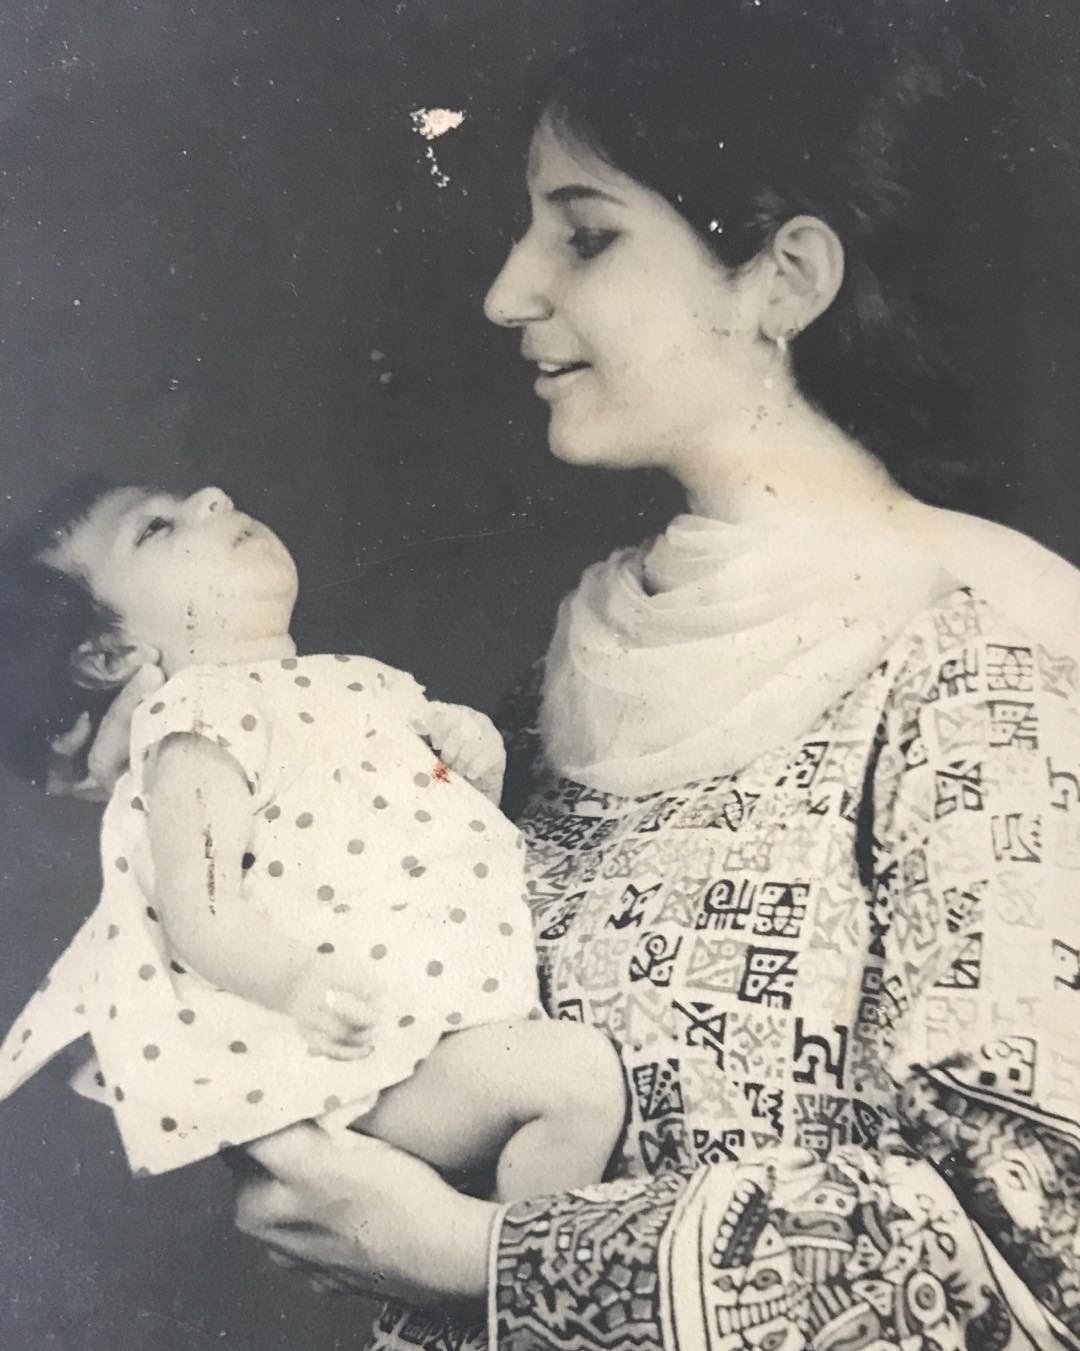 अपनी मां के साथ पुनीत बी सैनी की एक पुरानी तस्वीर